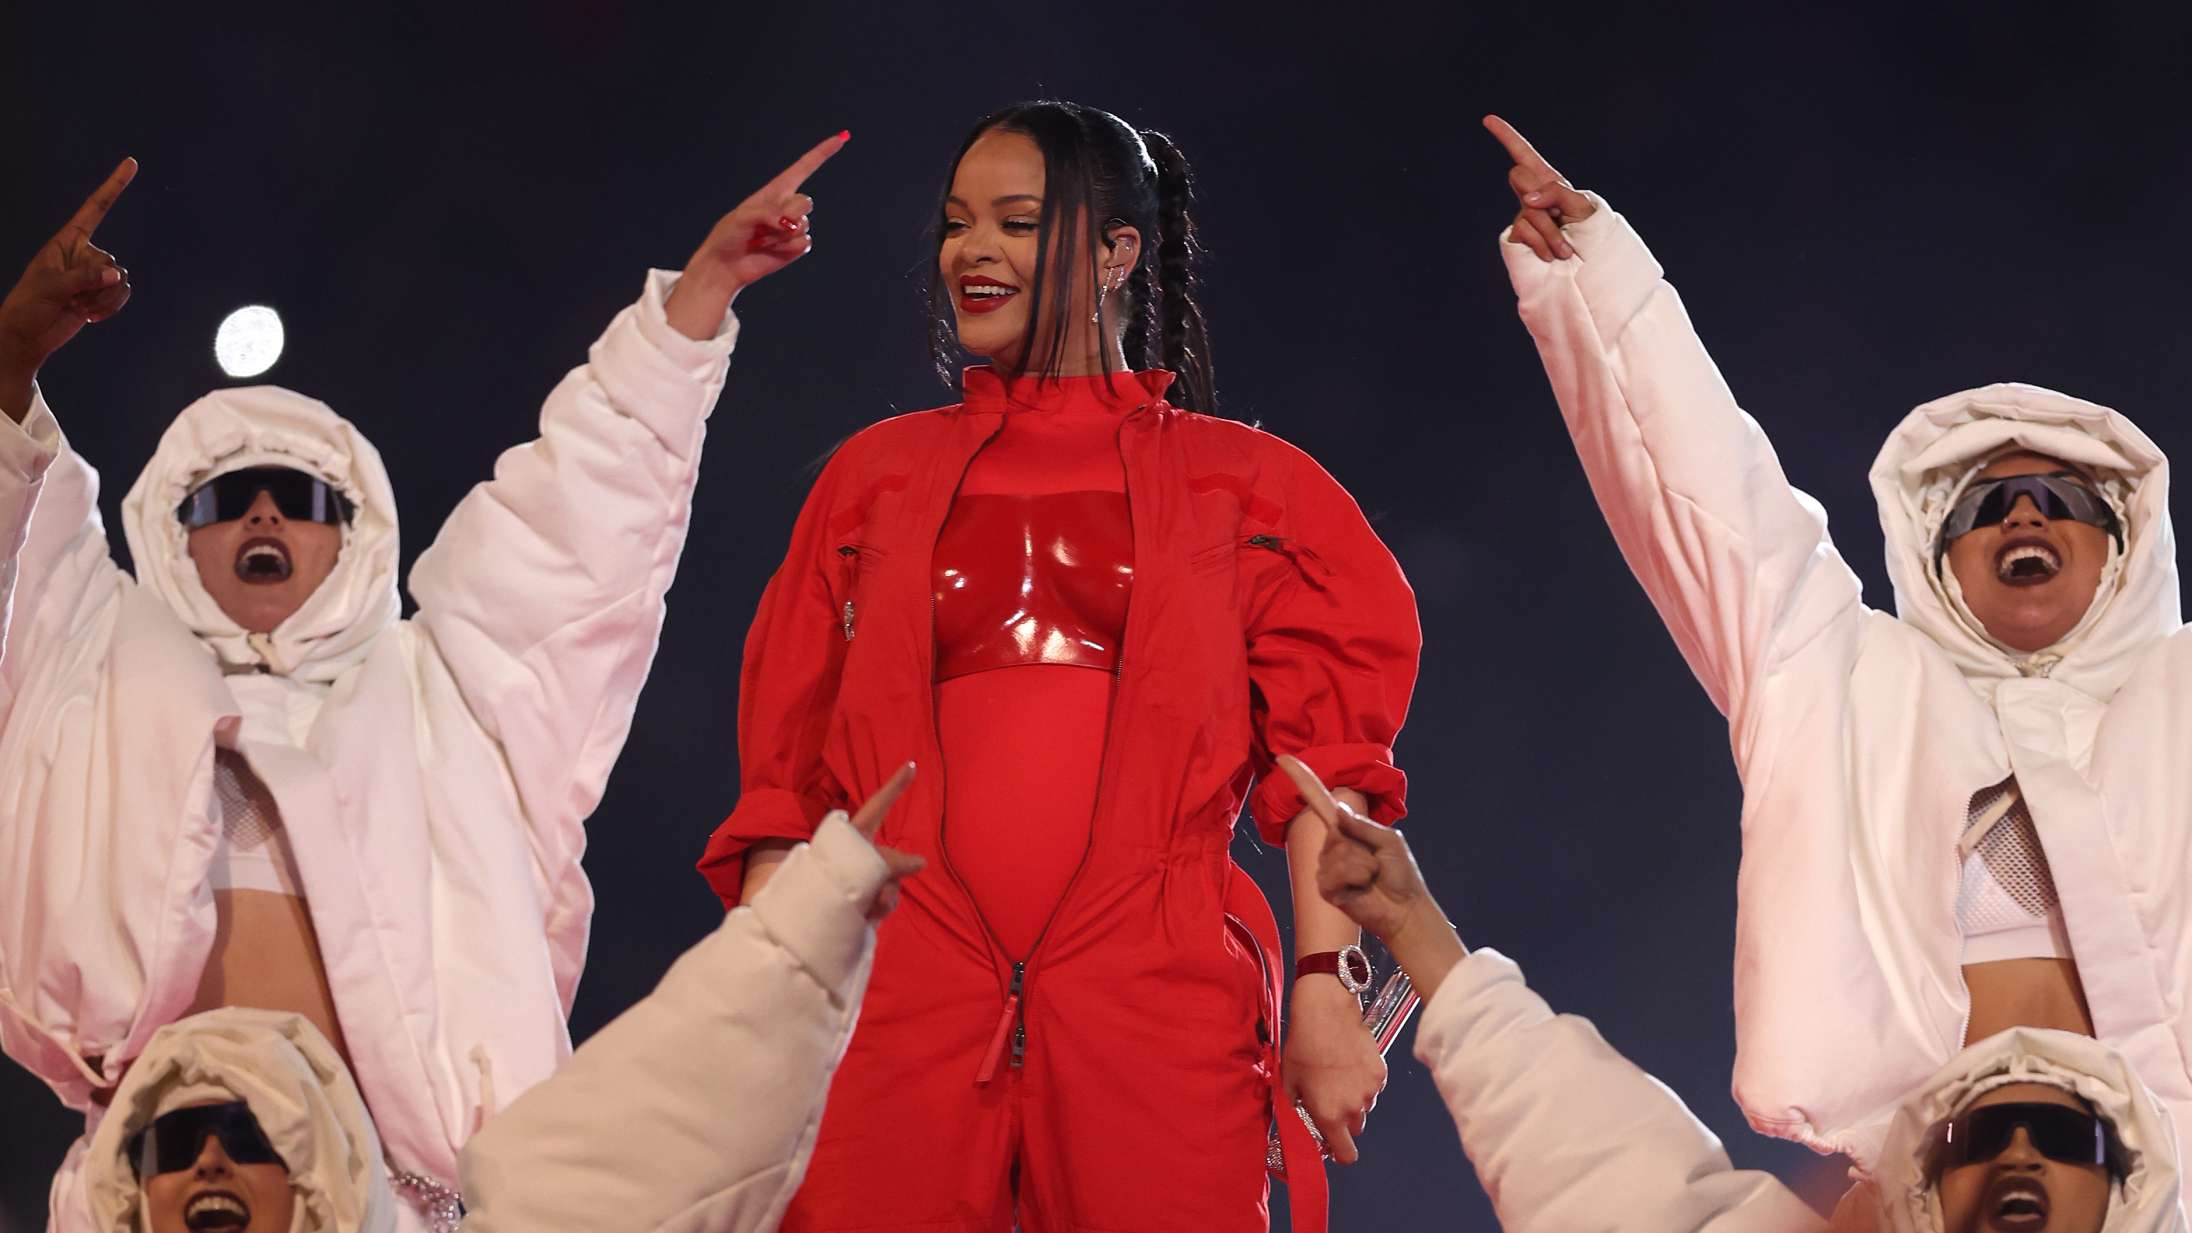 Her er nogle af de bedste memes fra Rihannas Super Bowl-show